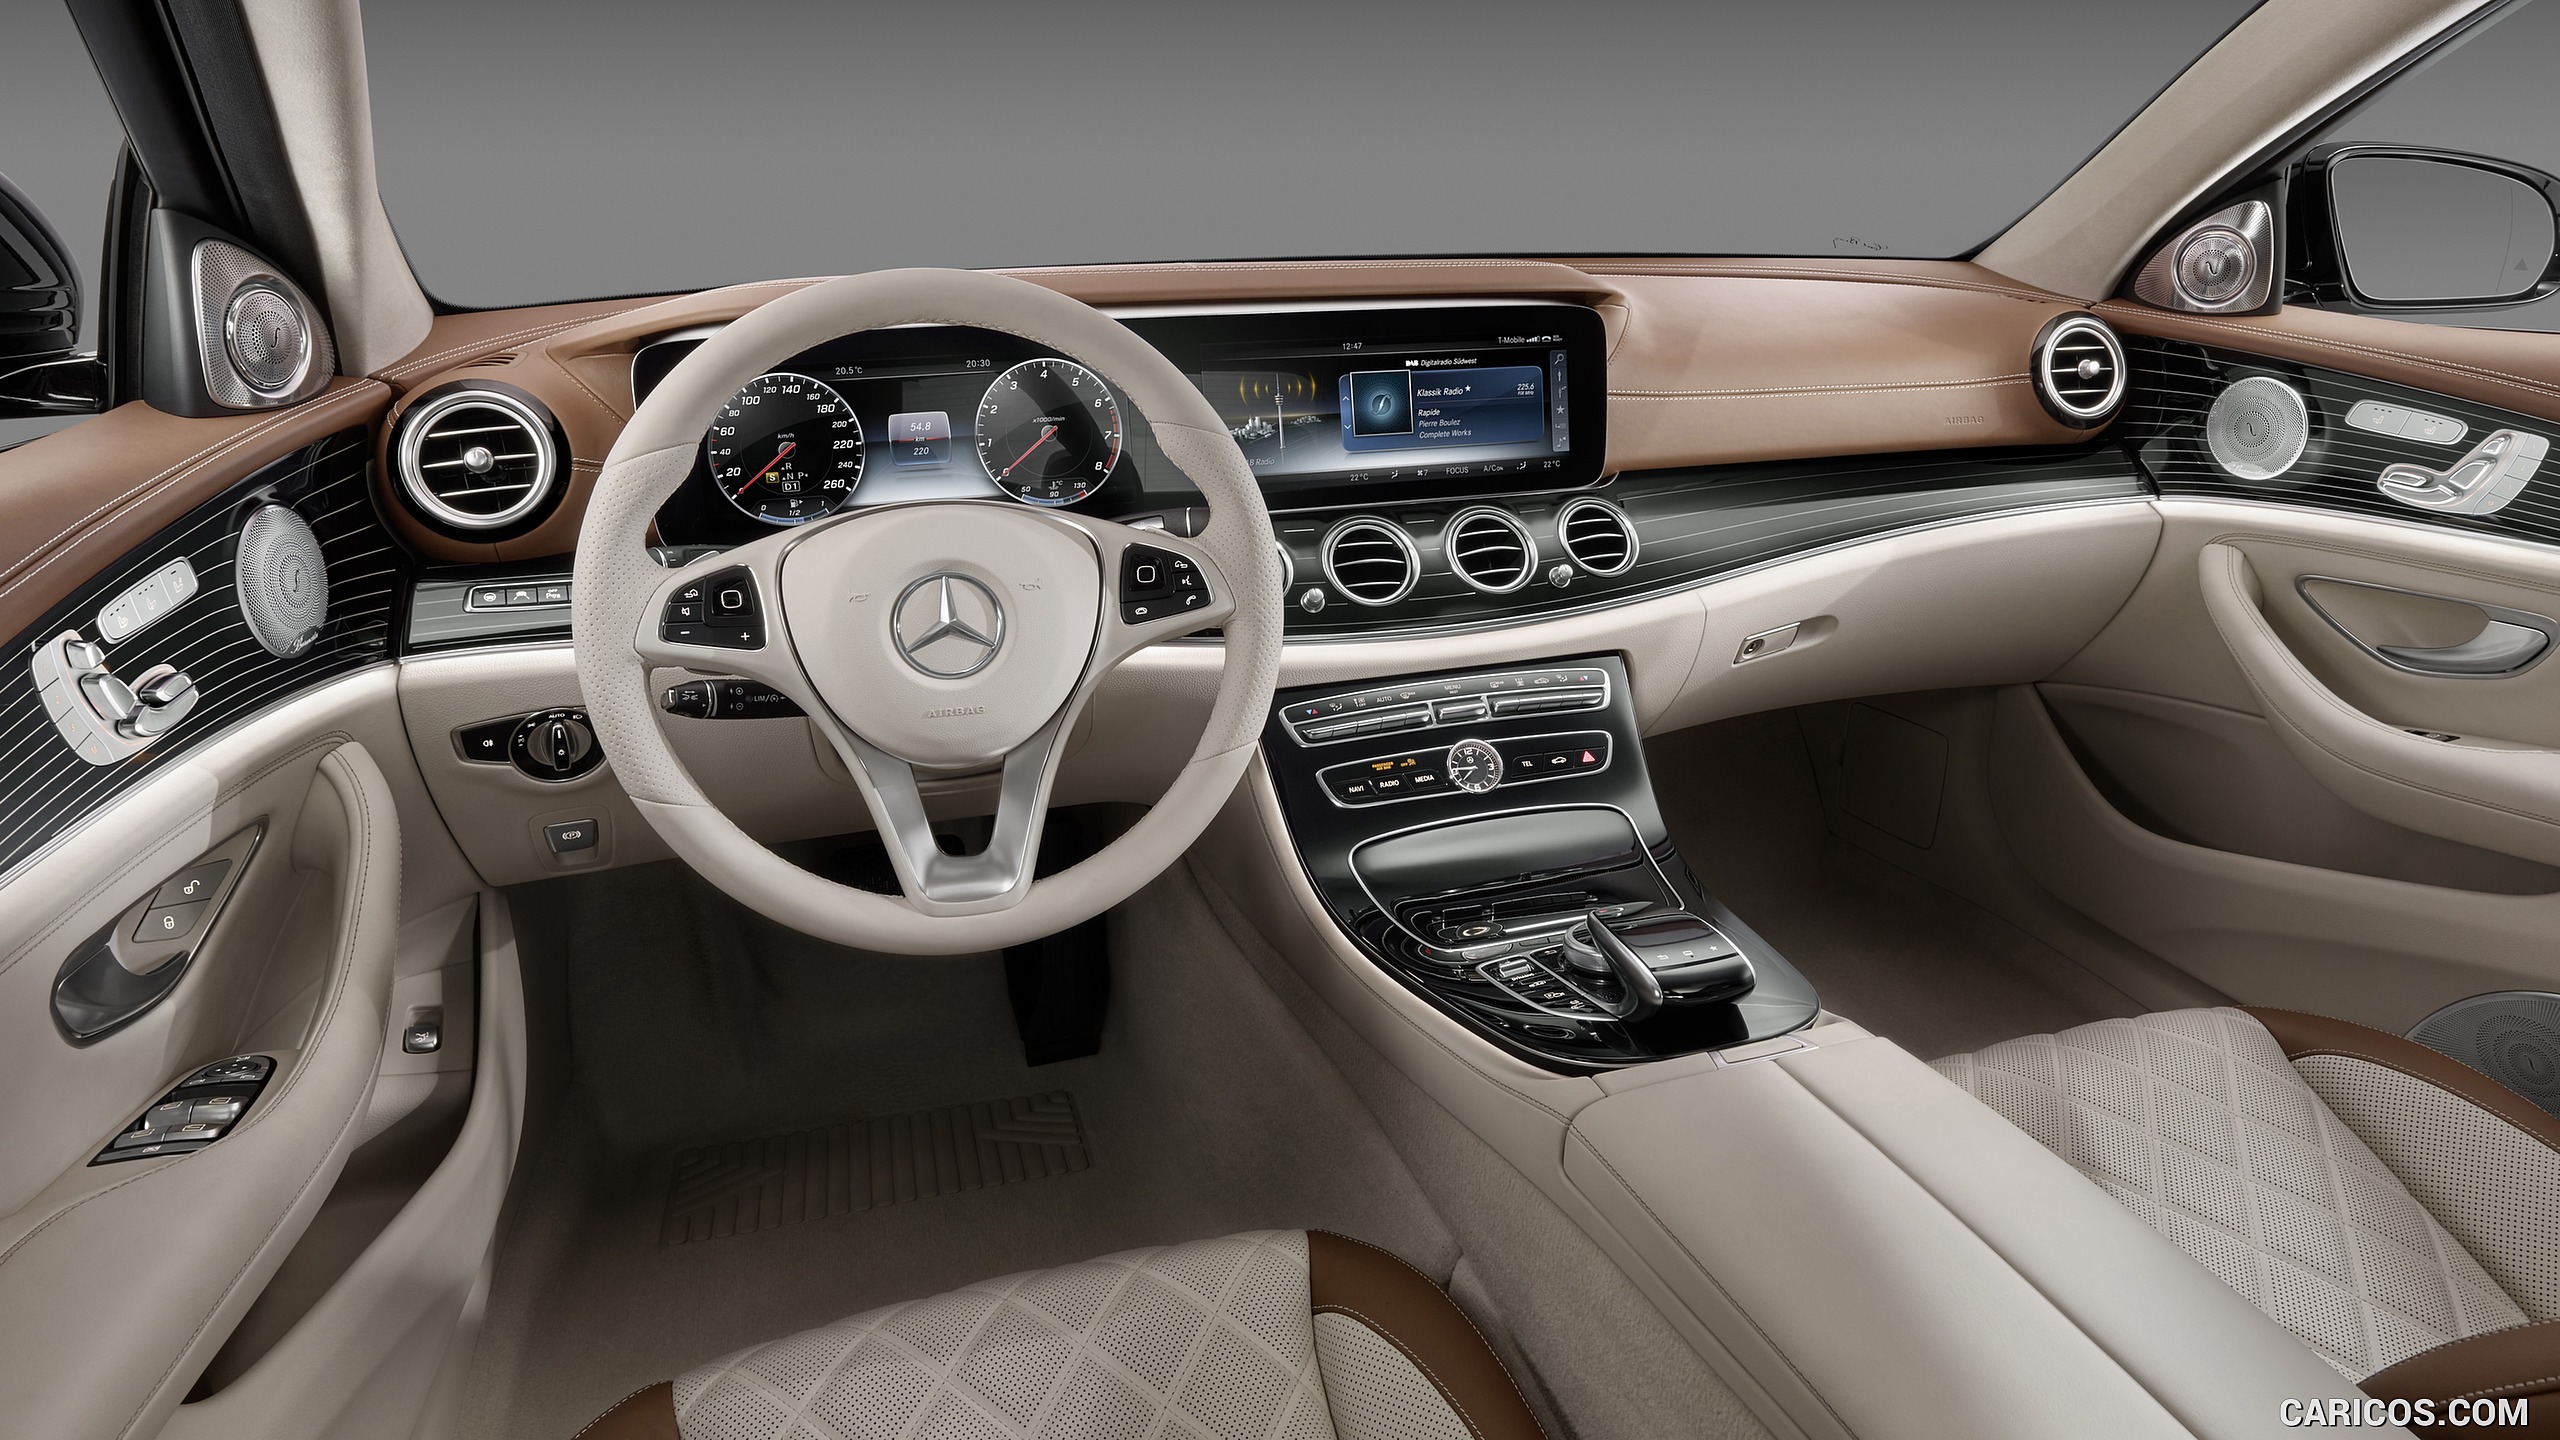 2017 Mercedes Benz E Class Interior Cockpit Hd